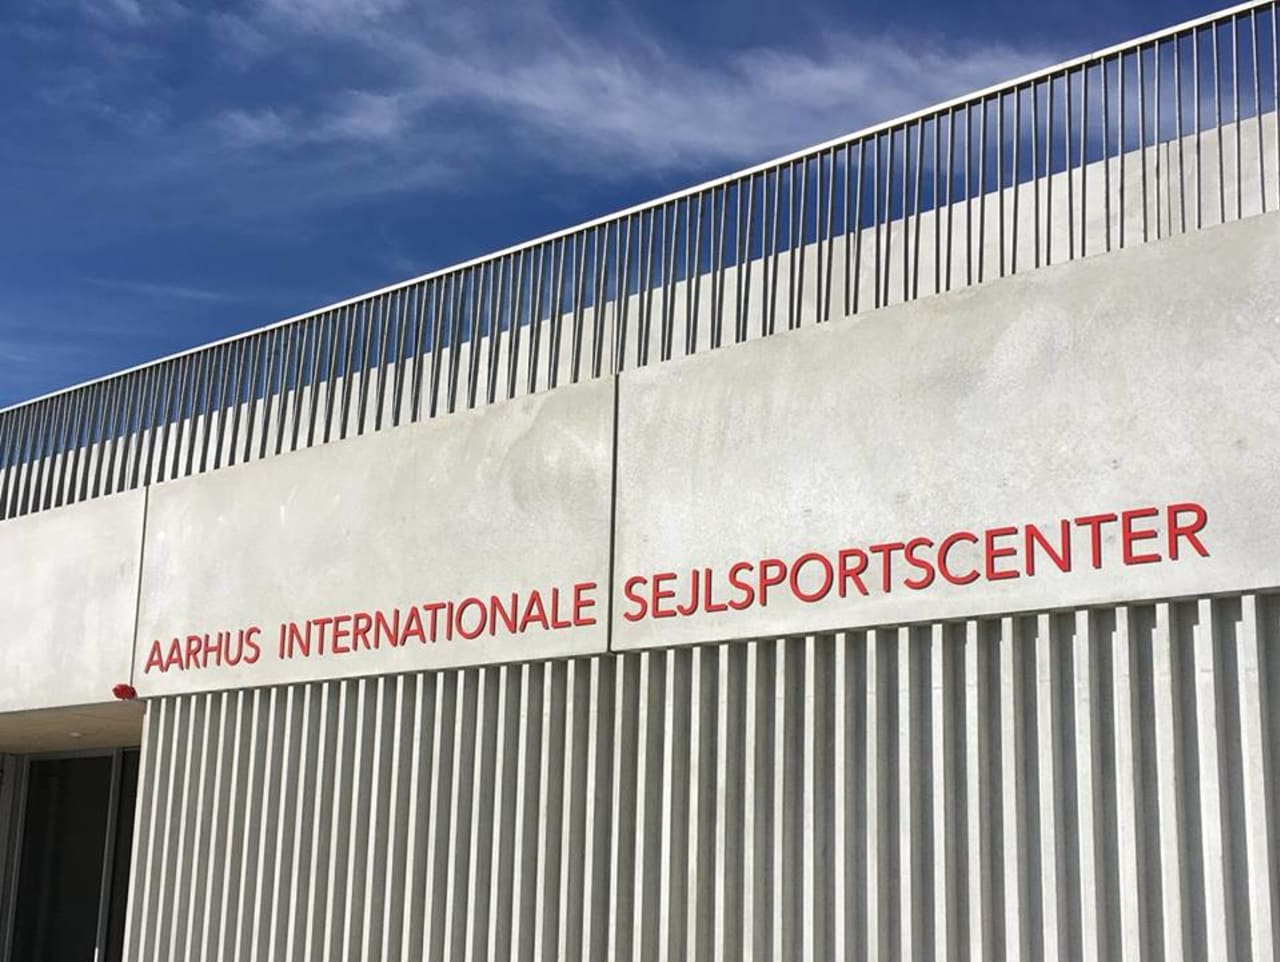 aarhus internationale sejlsportscenter skilt med navn